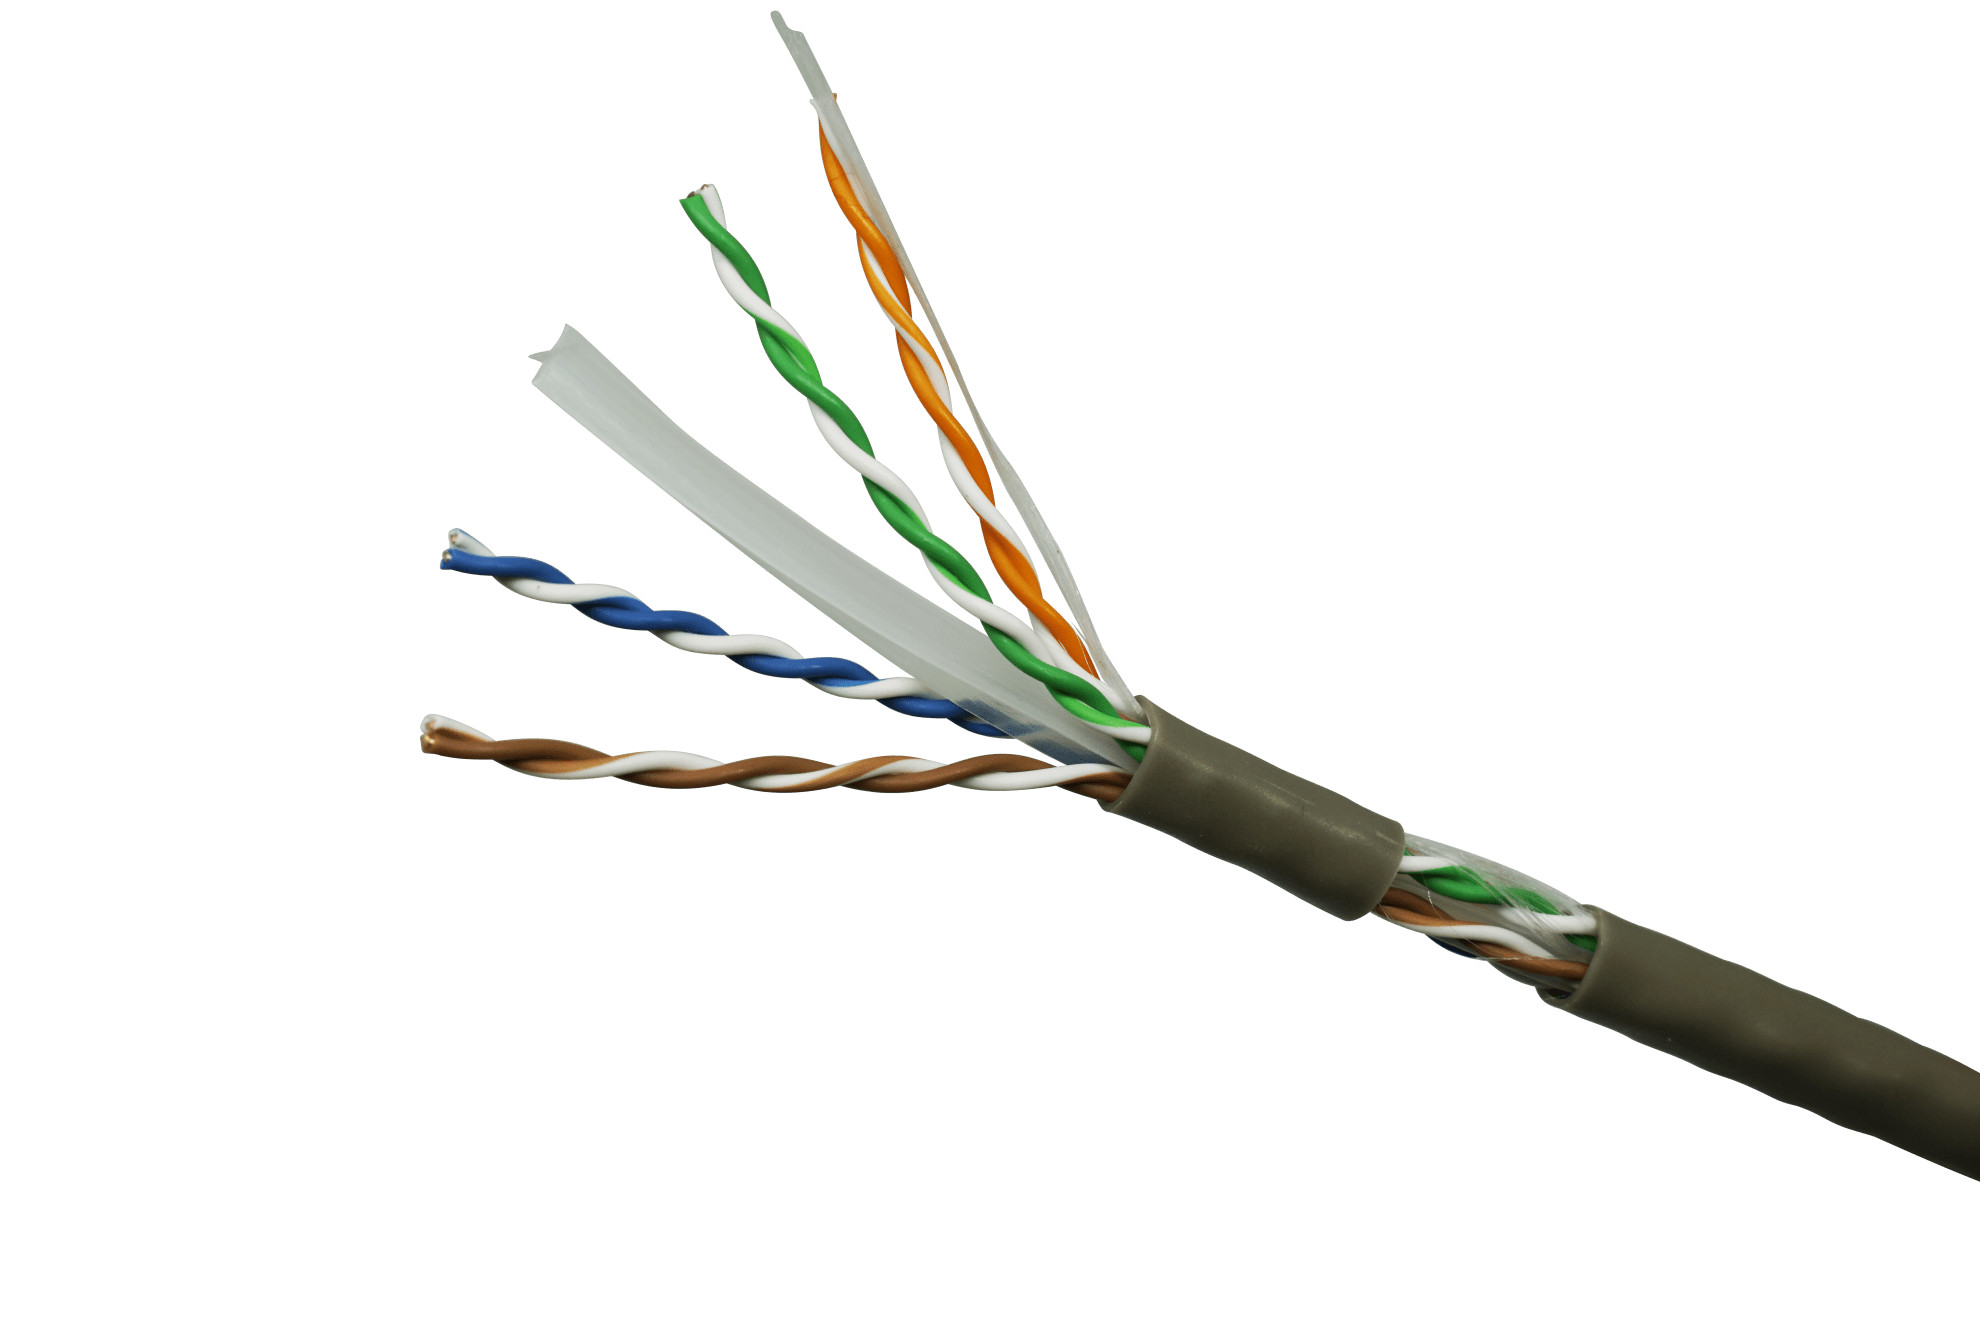 Cáp mạng Dintek Cable CAT6 UTP 100m (1101-04023) - Hàng Chính Hãng